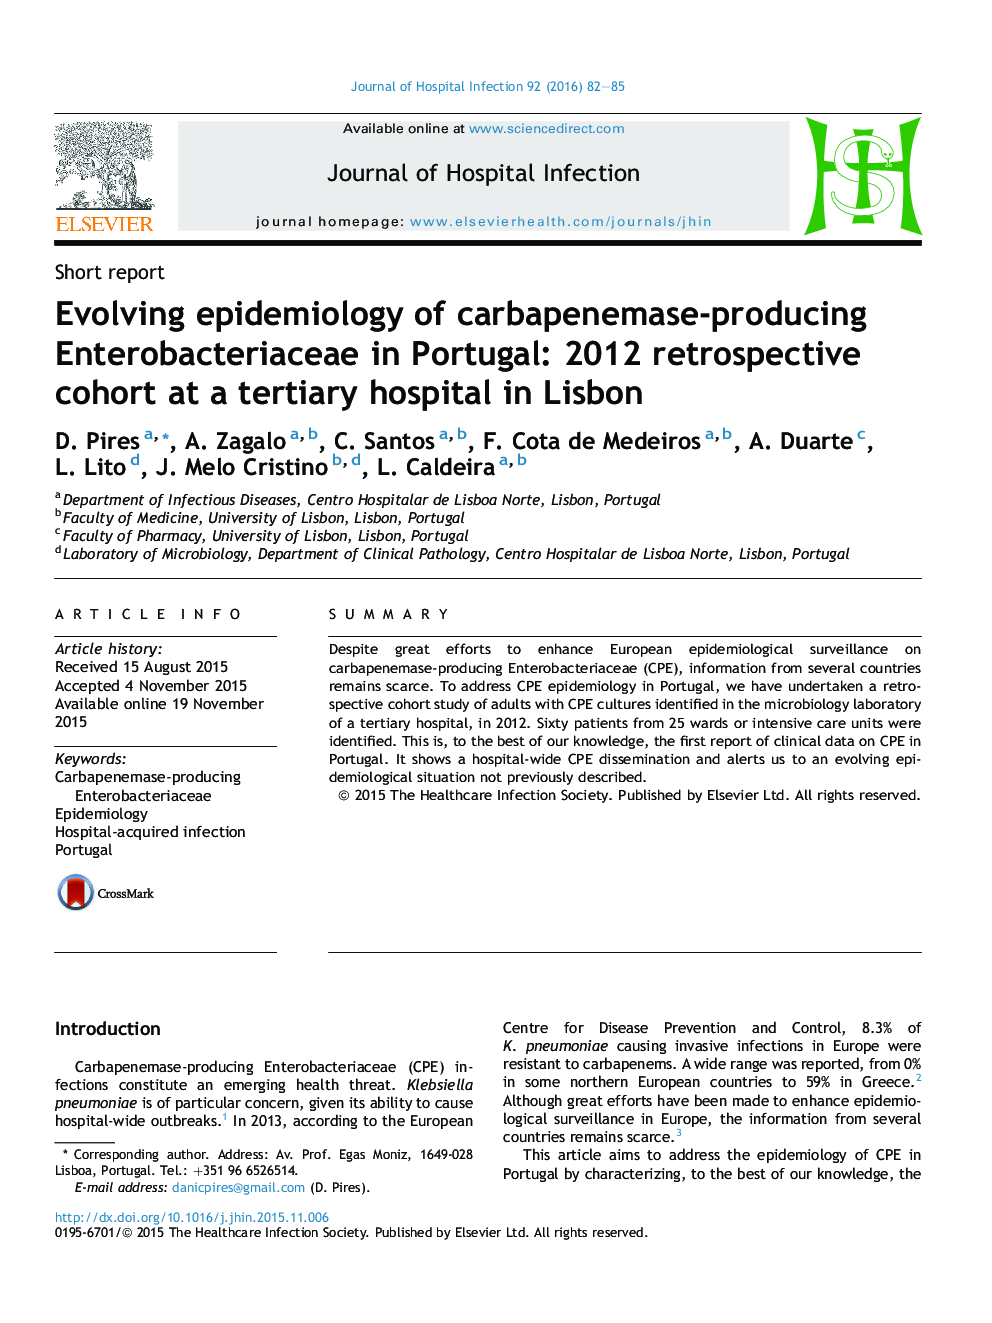 اپیدمیولوژی در حال تحول انتروباکتریاسه تولیدکننده کارباپنماز در پرتغال: همگروهی گذشته نگر 2012 در یک بیمارستان عالی در لیسبون